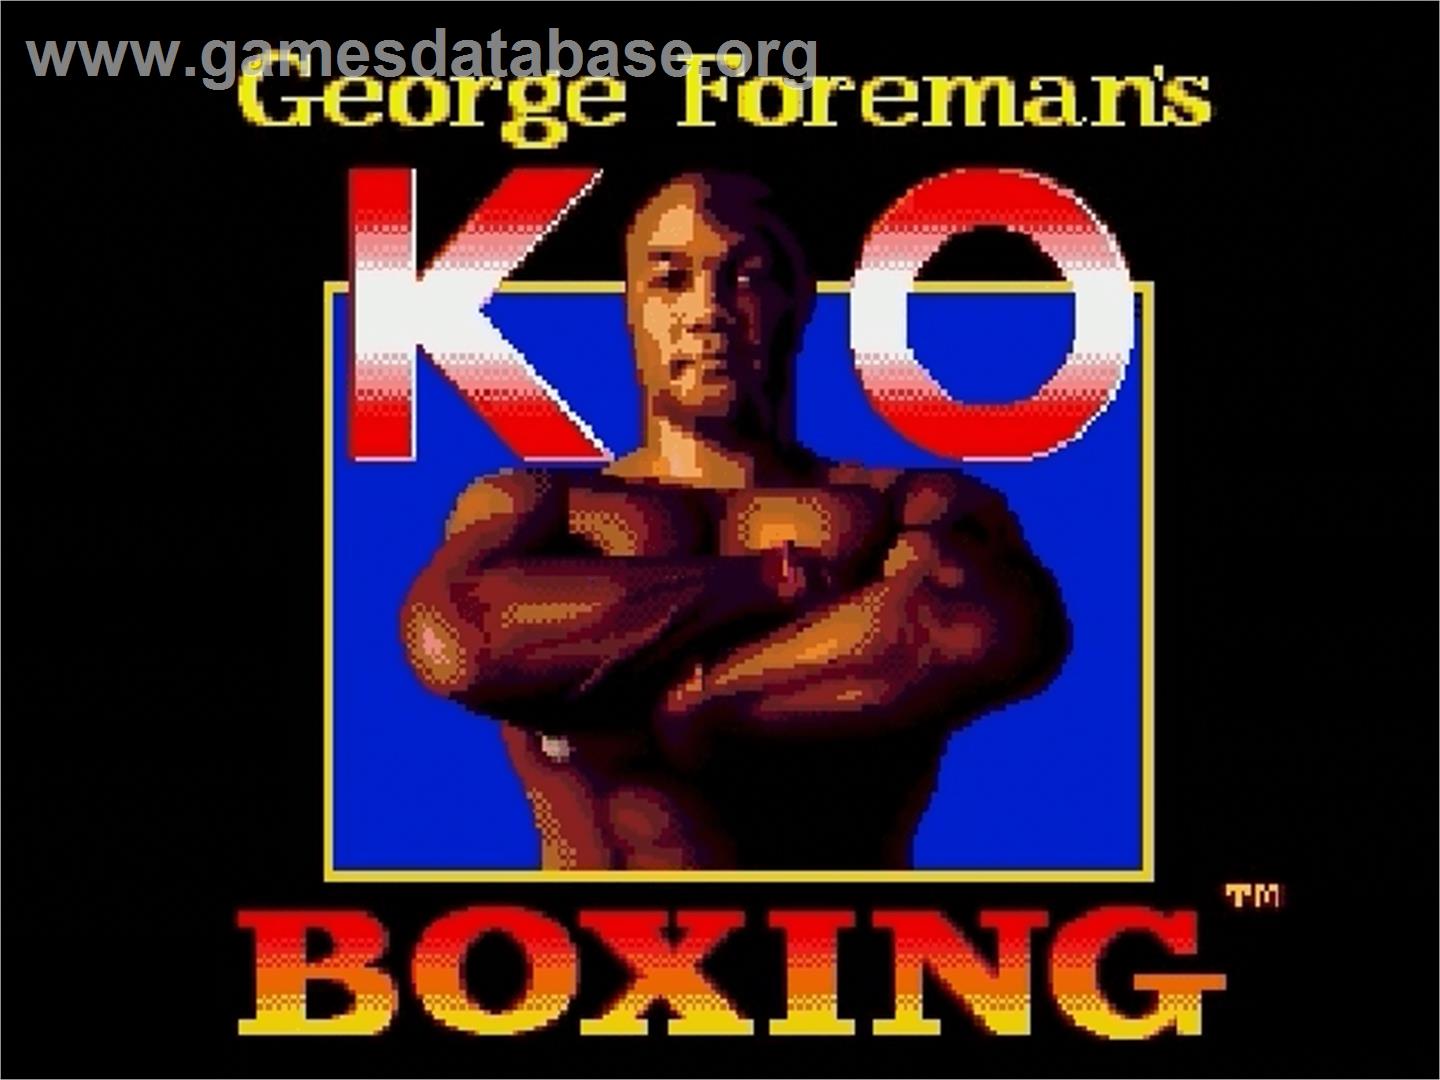 George Foreman's KO Boxing - Sega Genesis - Artwork - Title Screen